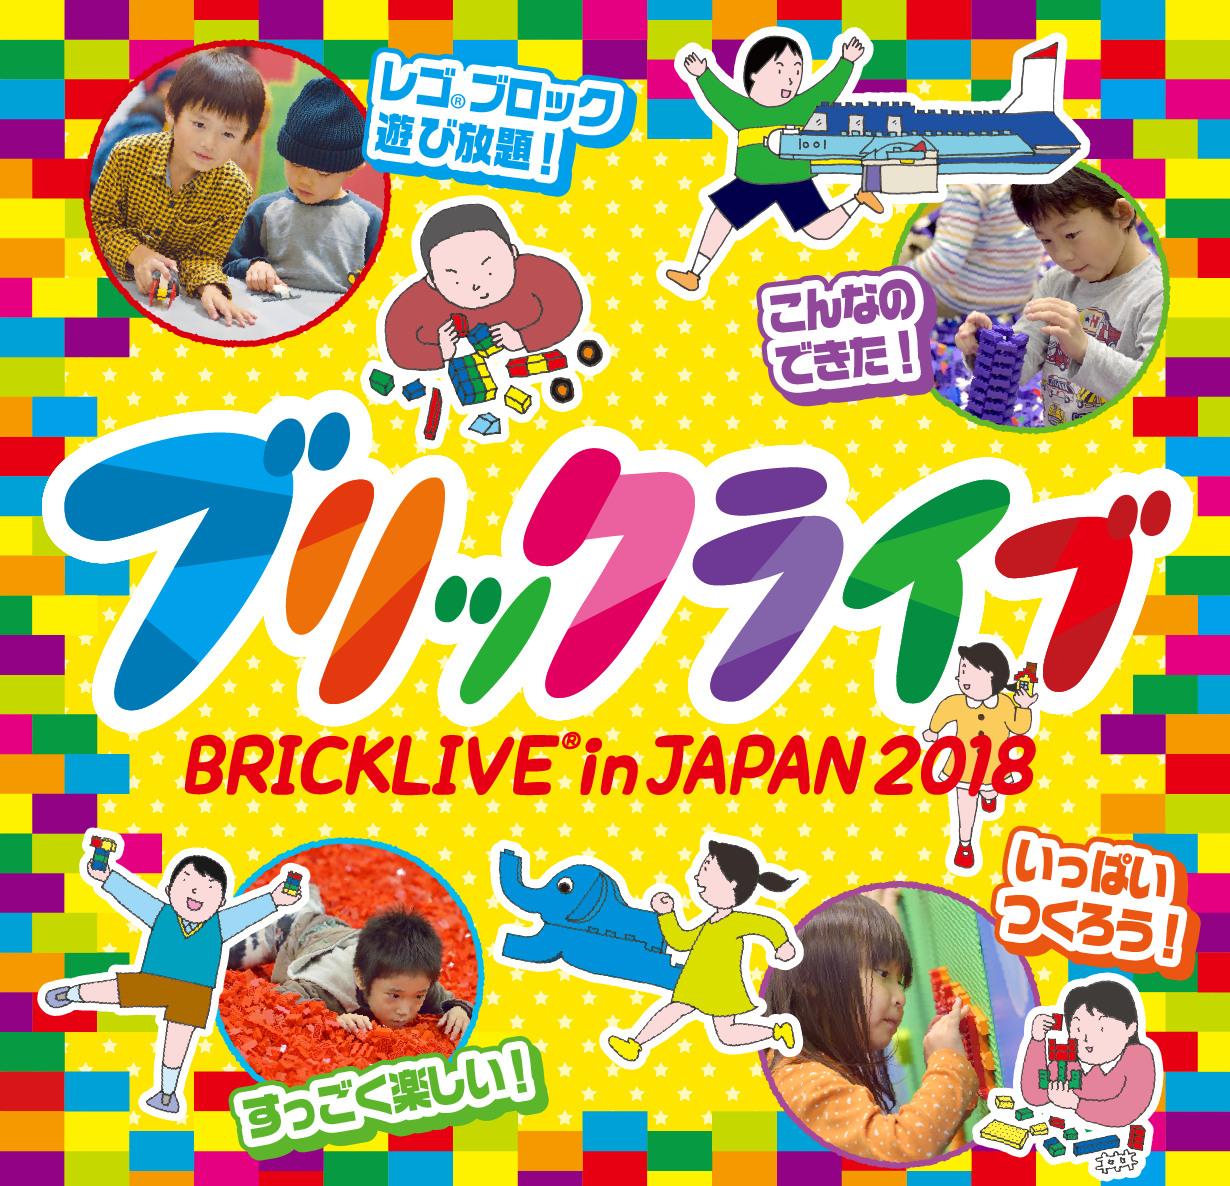 LEGO®ブロックを使った参加体験型イベント「BRICKLIVE® in JAPAN 2018」ベルサール秋葉原にて開催